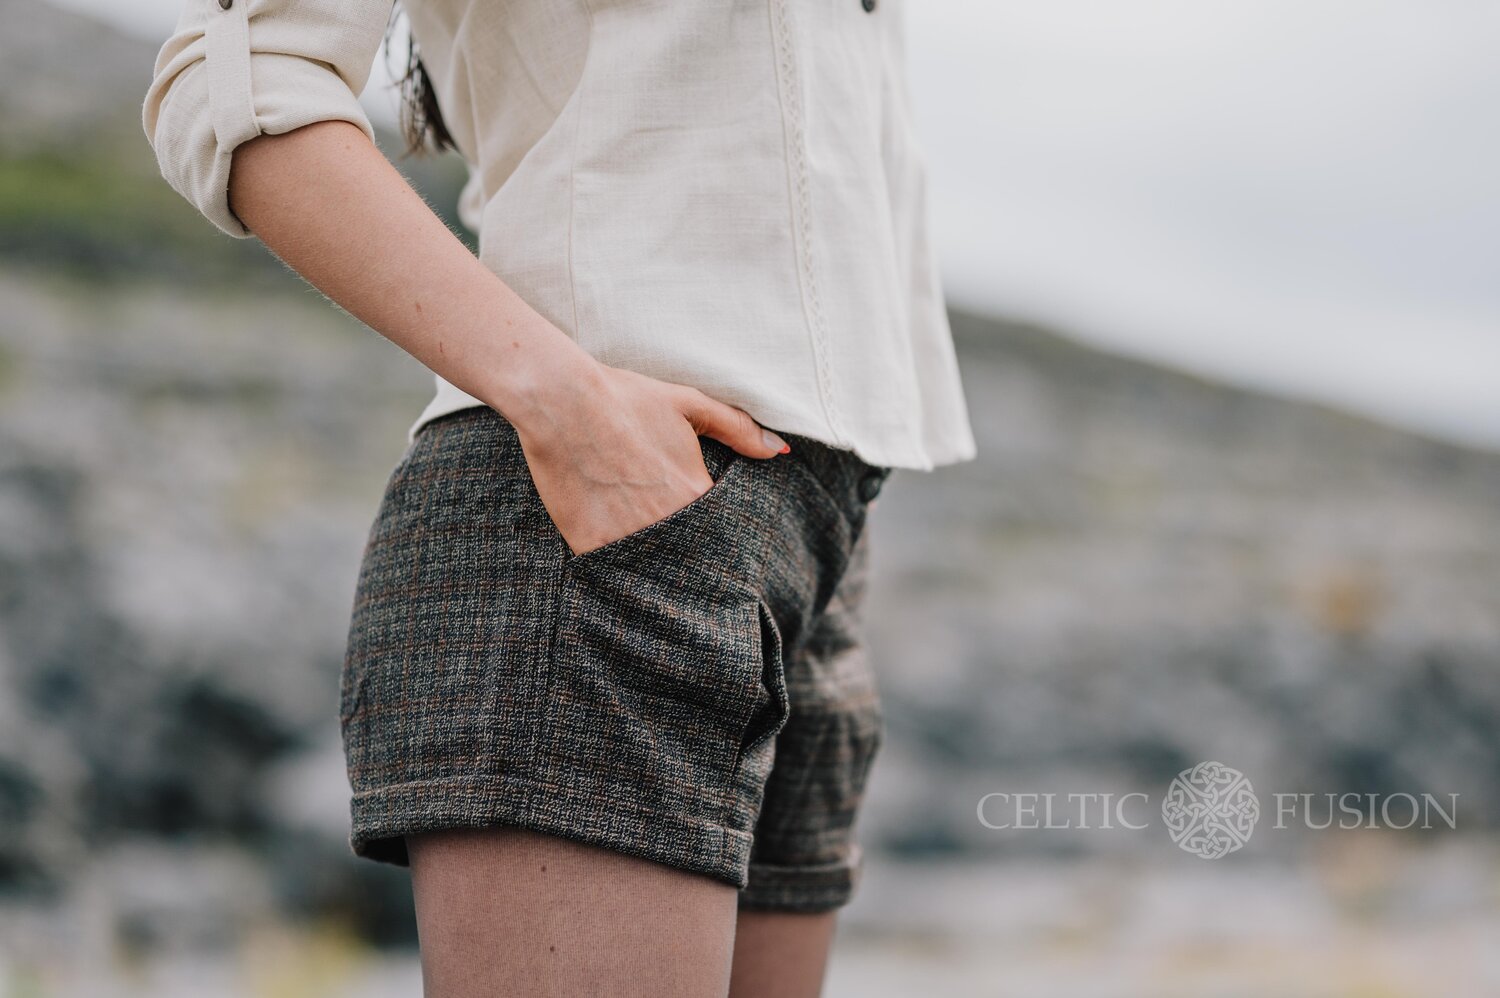 Hobart Dental Foresight Oak Tweed Shorts. Ladies Tweed Clothing — Celtic Fusion ~ Folklore Clothing